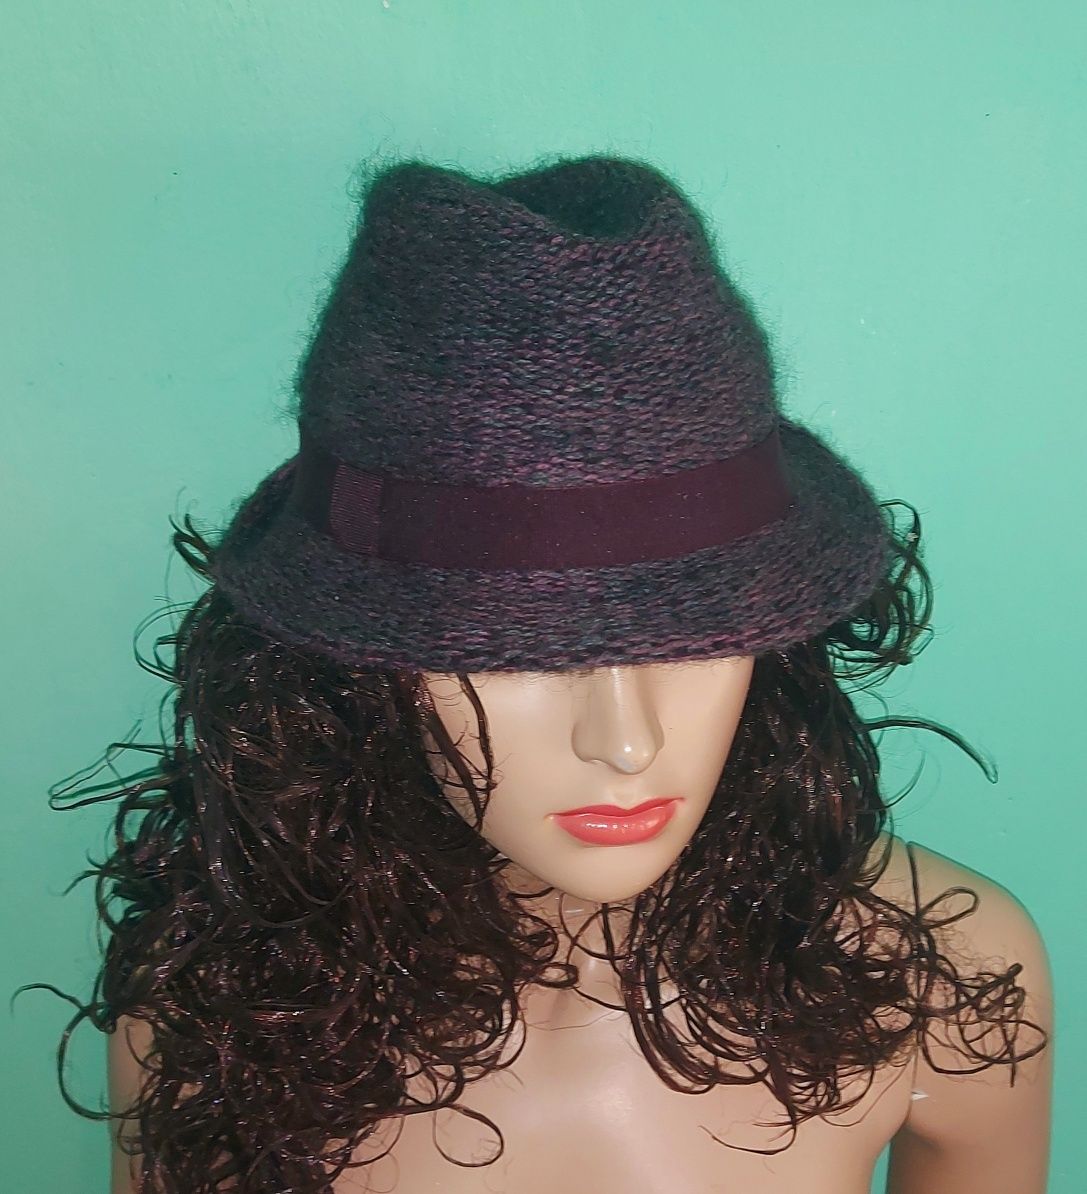 Теплая шляпа Raffaello Bettini Италия размер M/L